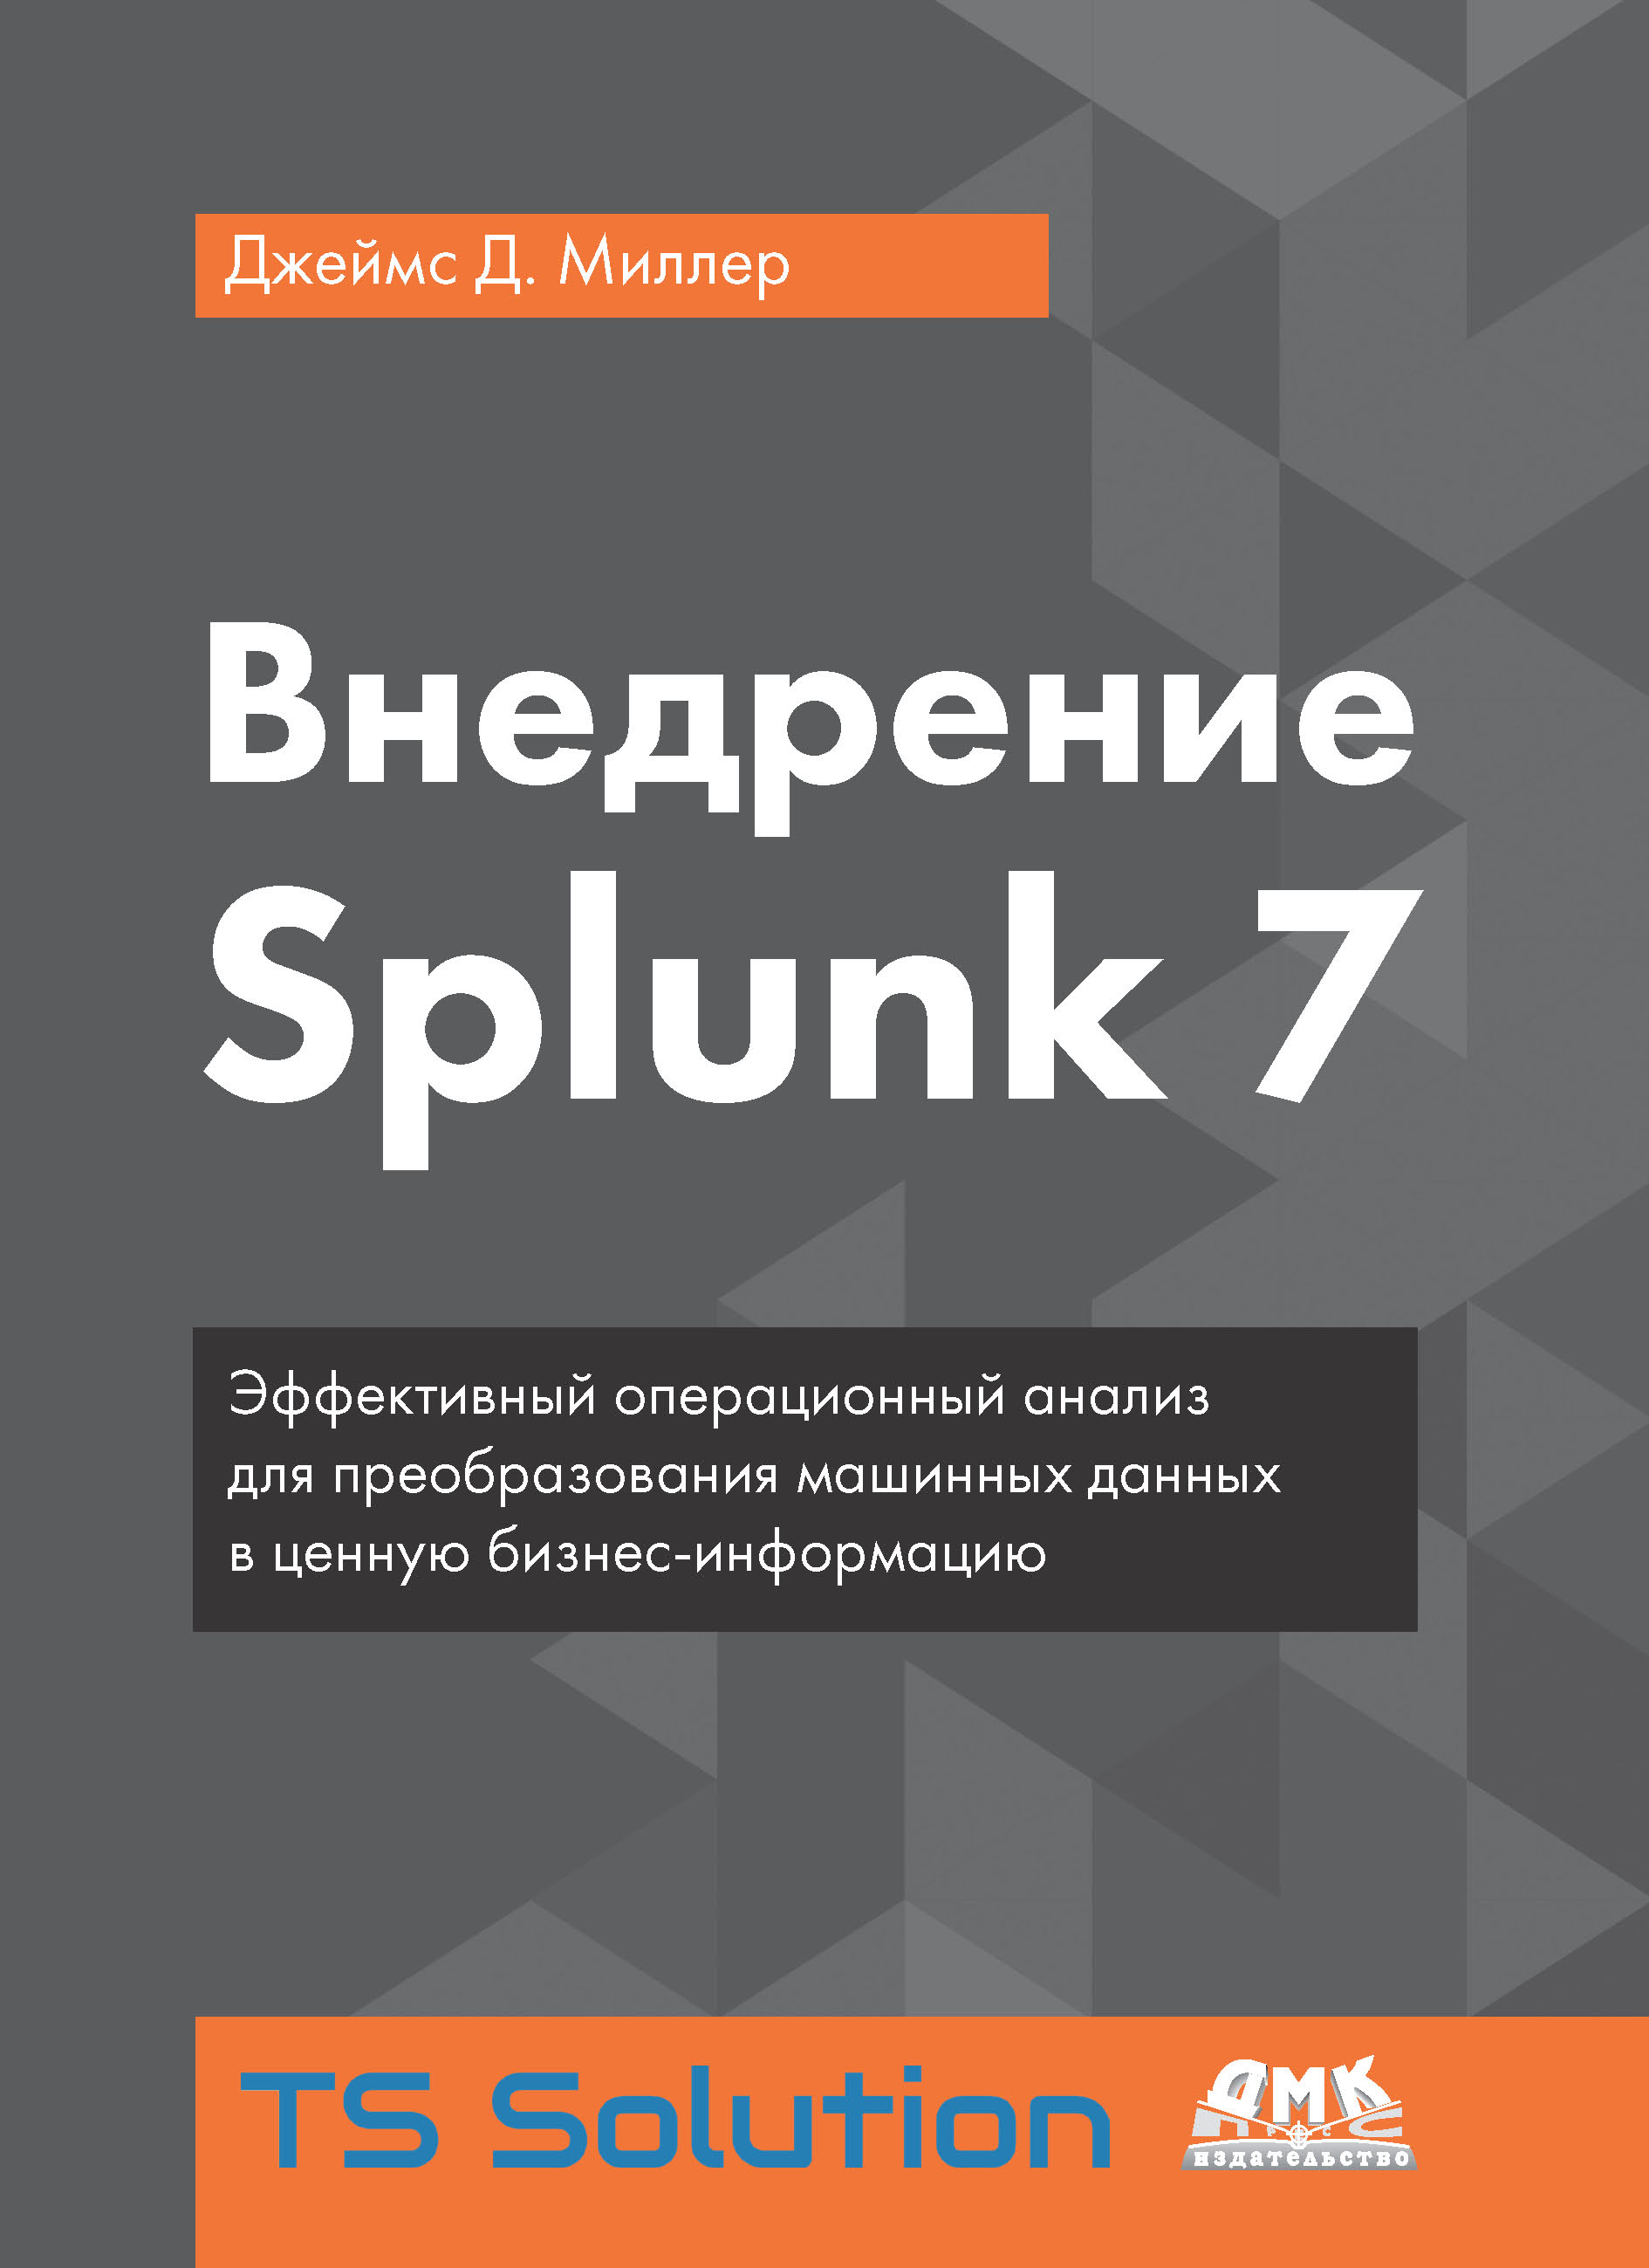 Книга  Внедрение Splunk 7 созданная Джеймс Д. Миллер, Александр Киселев может относится к жанру зарубежная компьютерная литература, информационная безопасность, программы. Стоимость электронной книги Внедрение Splunk 7 с идентификатором 43643323 составляет 990.00 руб.